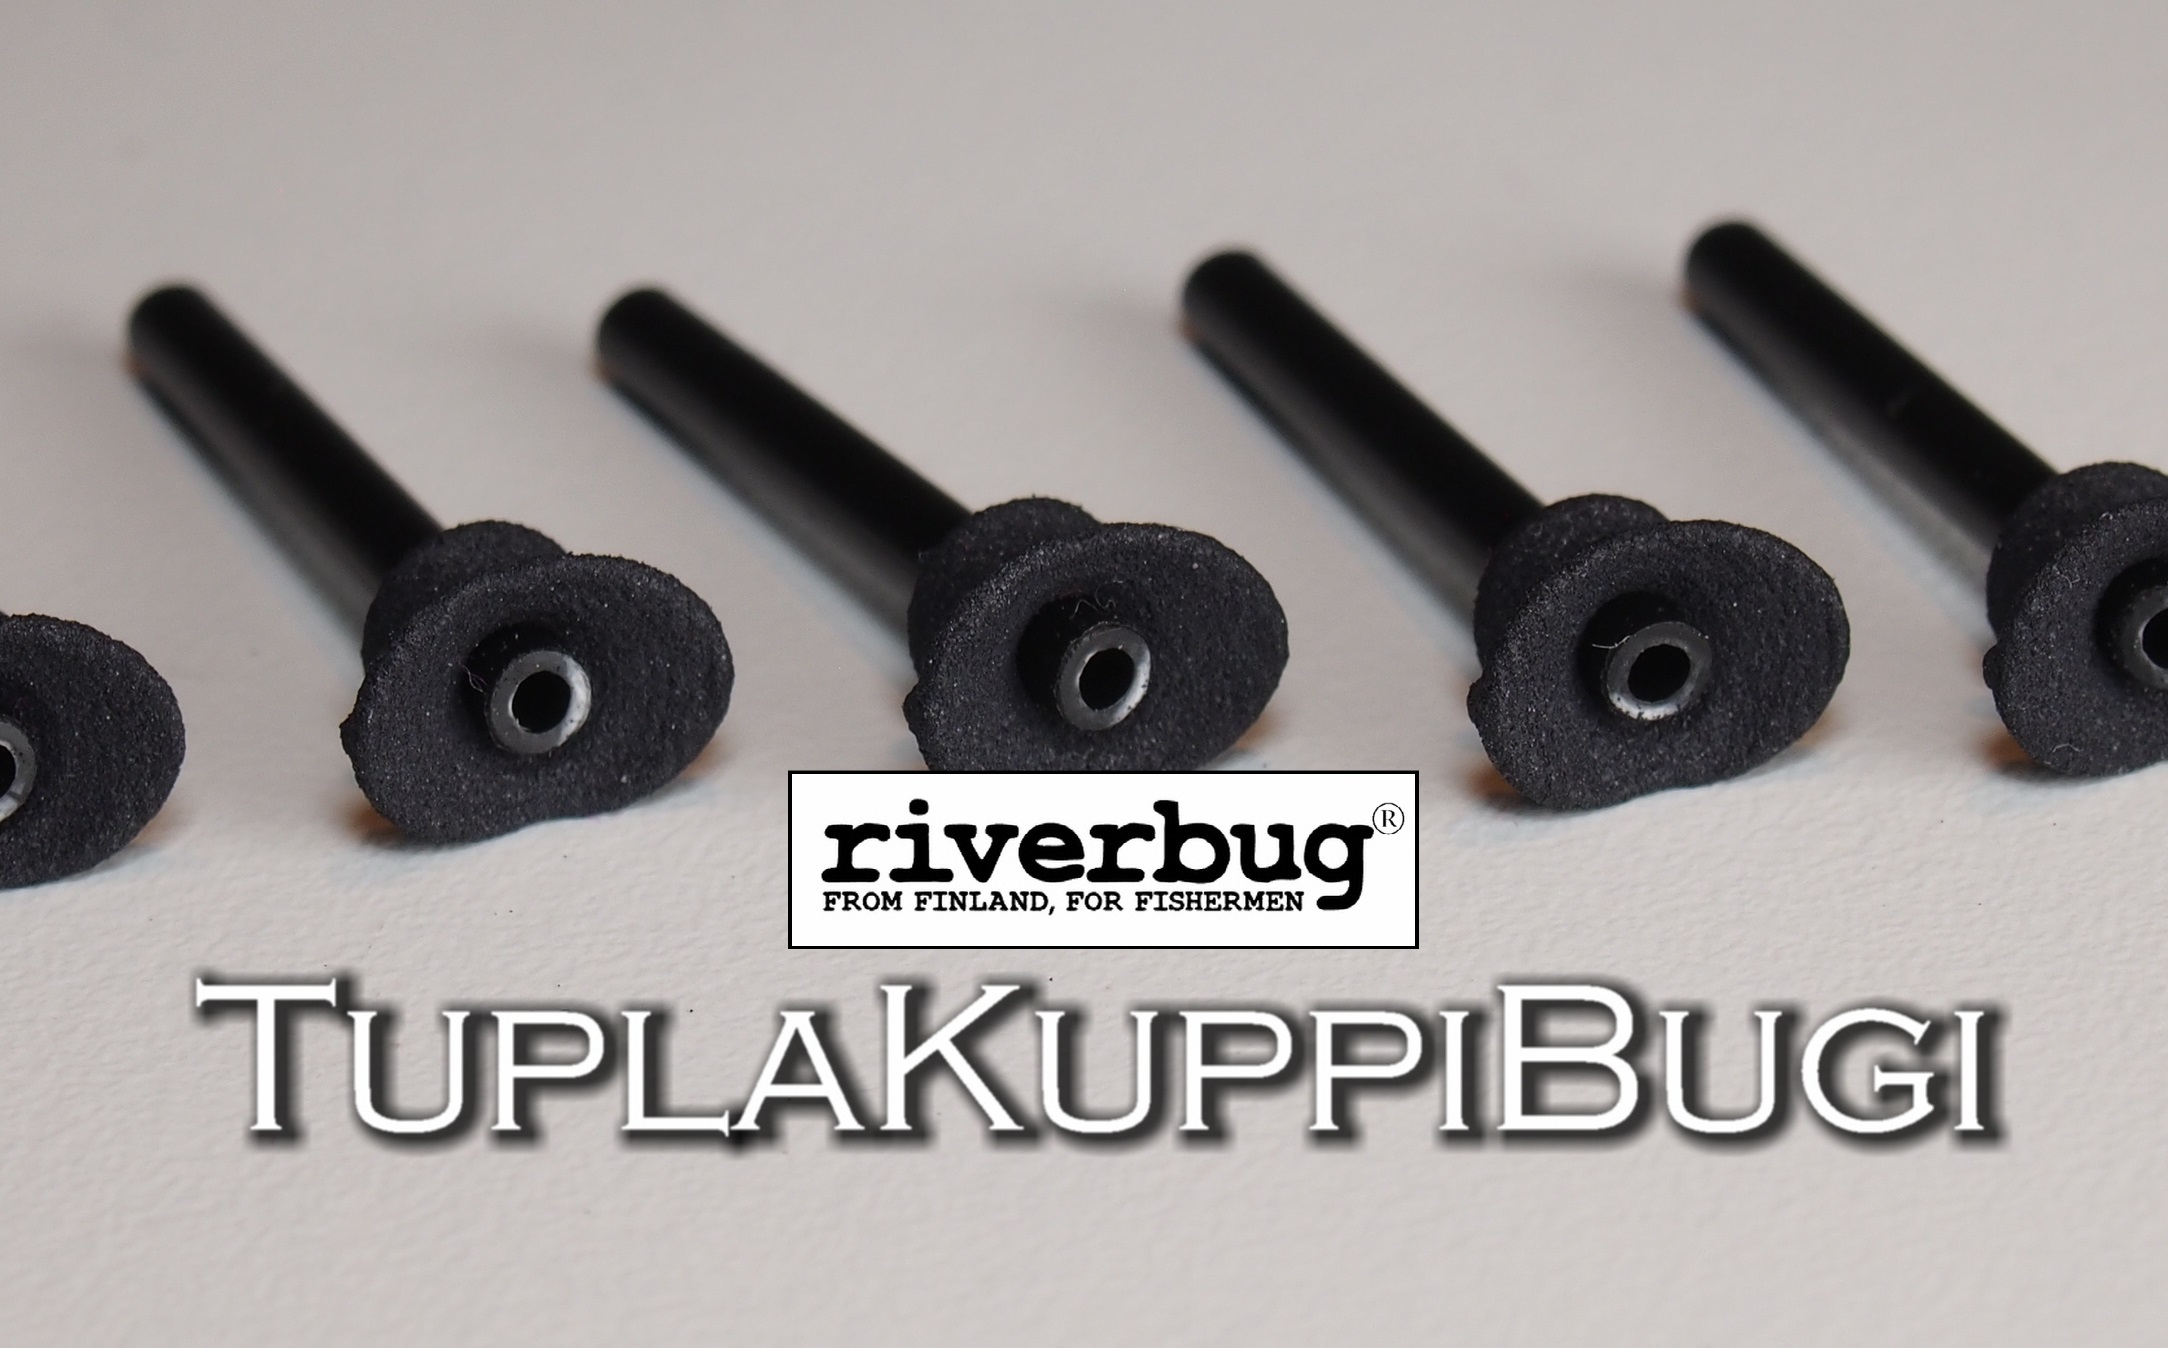 PUTKIPERHOT - PERHOKALASTUS - PERHONSIDONTA - RIVERBUG PERHOKALASTUSVÄLINEET - TUPLAKUPPIBUGIT - SOUTUPERHOT. RiverBug Slidehead tube fly sleeve. #putkiperhot #tubefly #perhonsidonta #riverbug #PERHOKALASTUS #SPINFLUGA #KALASTUSVÄLINEETOULU #PERHOKALASTUSFIN #KALASTUSVÄLINEETFIN #BUGIPERHO #TORNIONJOKIPERHO #TORNIONJOKIKALASTUS #KYMIJOKPERHO #BODENLAXFISKE #BODEN #SKELLEFTEÅ #SKELLEFTEÅLAXFISKE #PITEÅ #SUOMIKALASTUS #KALASTUSSUOMI #FISHINGFINLAND #MIFF #PERHOPESÄ #KALASTUSKAUPPA #OTTIPERHOT #LOHIPERHONSIDOTA #TAIMENPERHONSIDONTA #PERHOPERHO #PERHOKALASTUSPERHO #PERHOSETTI #IISIPERHO #HELPPOPERHO #KALASTUSKIRPPUTORI #TUBEFLUE #TUBFLUGA #PUTKIPERHOTCOM #MERIKOSKIKALASTUSFI #MESSINKIBUGI #RIVERBUG2 #ORANSSIMUSTA #PUTKIPERHOKALASTUS #PERHOKALASTUSPERHO #PERHOPERHO #SUOMIPERHO #OULUJOKIPERHO #OULUSPINFLUGA #RIVERTUBEPUTKIPERHO #FLYFISHINGFINLAND #FLYFINLAND #MADEINFINLAND #TORNIONJOKI #TORNEÄLV #MATKAKOSKIPERHOT #KETTUPERHOT #PERHOTARVIKE #MERIKOSKIKALASTUSTA #OULUKALAVINKIT #PERHOKALASTUS #SPINFLUGA #KALASTUSVÄLINEETOULU #PERHOKALASTUSFIN #KALASTUSVÄLINEETFIN #BUGIPERHO #TORNIONJOKIPERHO #TORNIONJOKIKALASTUS #KYMIJOKPERHO #BODENLAXFISKE #BODEN #SKELLEFTEÅ #SKELLEFTEÅLAXFISKE #PITEÅ #SUOMIKALASTUS #KALASTUSSUOMI #FISHINGFINLAND #MIFF #PERHOPESÄ #KALASTUSKAUPPA #OTTIPERHOT #LOHIPERHONSIDOTA #TAIMENPERHONSIDONTA #PERHOPERHO #PERHOKALASTUSPERHO #PERHOSETTI #IISIPERHO #HELPPOPERHO #KALASTUSKIRPPUTORI #TUBEFLUE #TUBFLUGA #PUTKIPERHOTCOM #MERIKOSKIKALASTUSFI #MESSINKIBUGI #RIVERBUG2 #ORANSSIMUSTA #PUTKIPERHOKALASTUS #PERHOKALASTUSPERHO #PERHOPERHO #SUOMIPERHO #OULUJOKIPERHO #OULUSPINFLUGA #RIVERTUBEPUTKIPERHO #FLYFISHINGFINLAND #FLYFINLAND #MADEINFINLAND #TORNIONJOKI #TORNEÄLV #MATKAKOSKIPERHOT #KETTUPERHOT #PERHOTARVIKE #MERIKOSKIKALASTUSTA #OULUKALAVINKIT